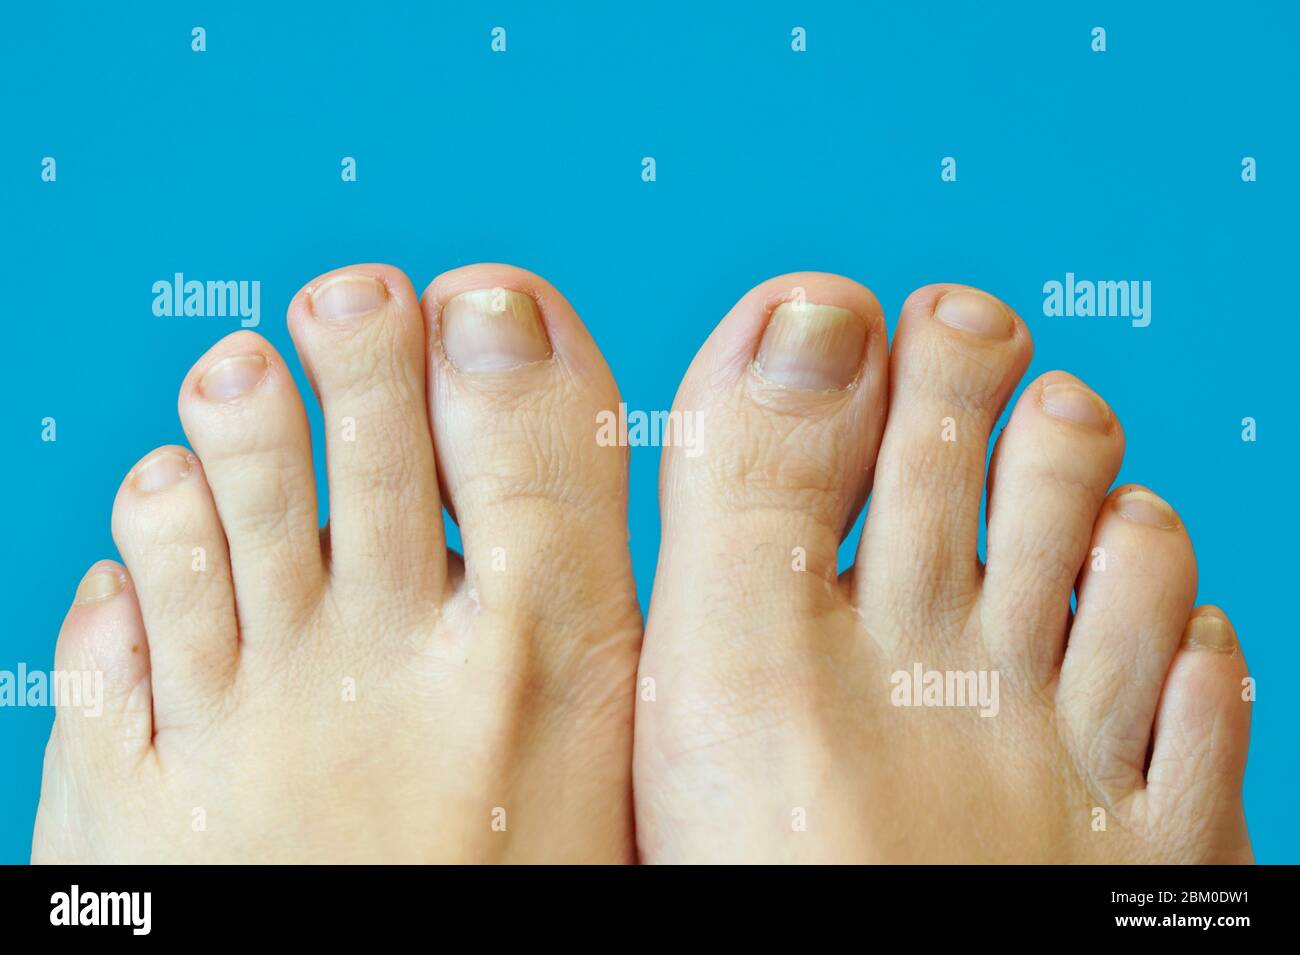 pies femeninos patas de pie. dedos de los pies con uña psoriasis. Una mujer  tiene uñas encarnadas. Uñas cortas cortadas. Dermatitis. Pie con psoriasis  en las uñas Fotografía de stock - Alamy